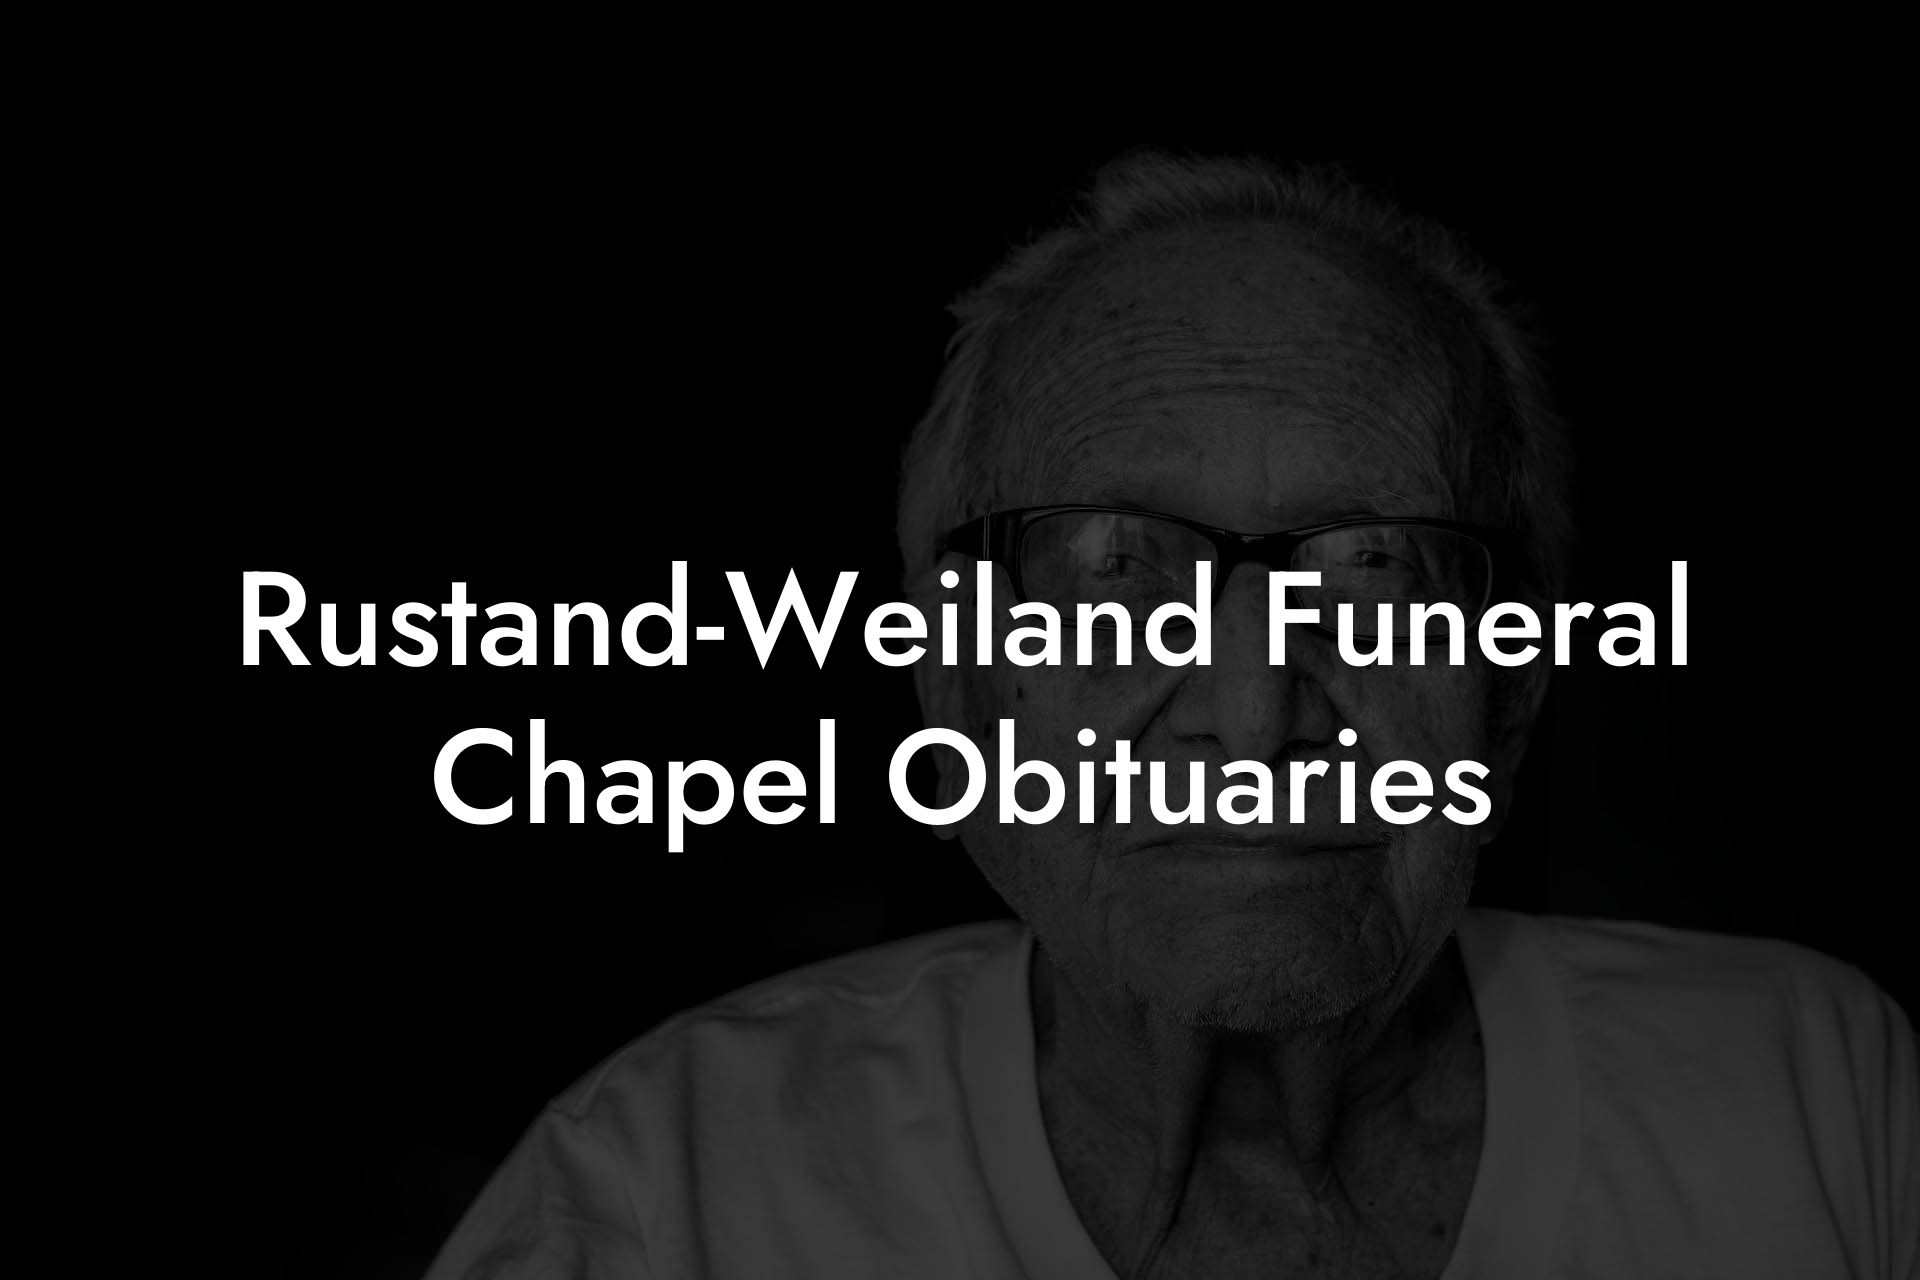 Rustand-Weiland Funeral Chapel Obituaries